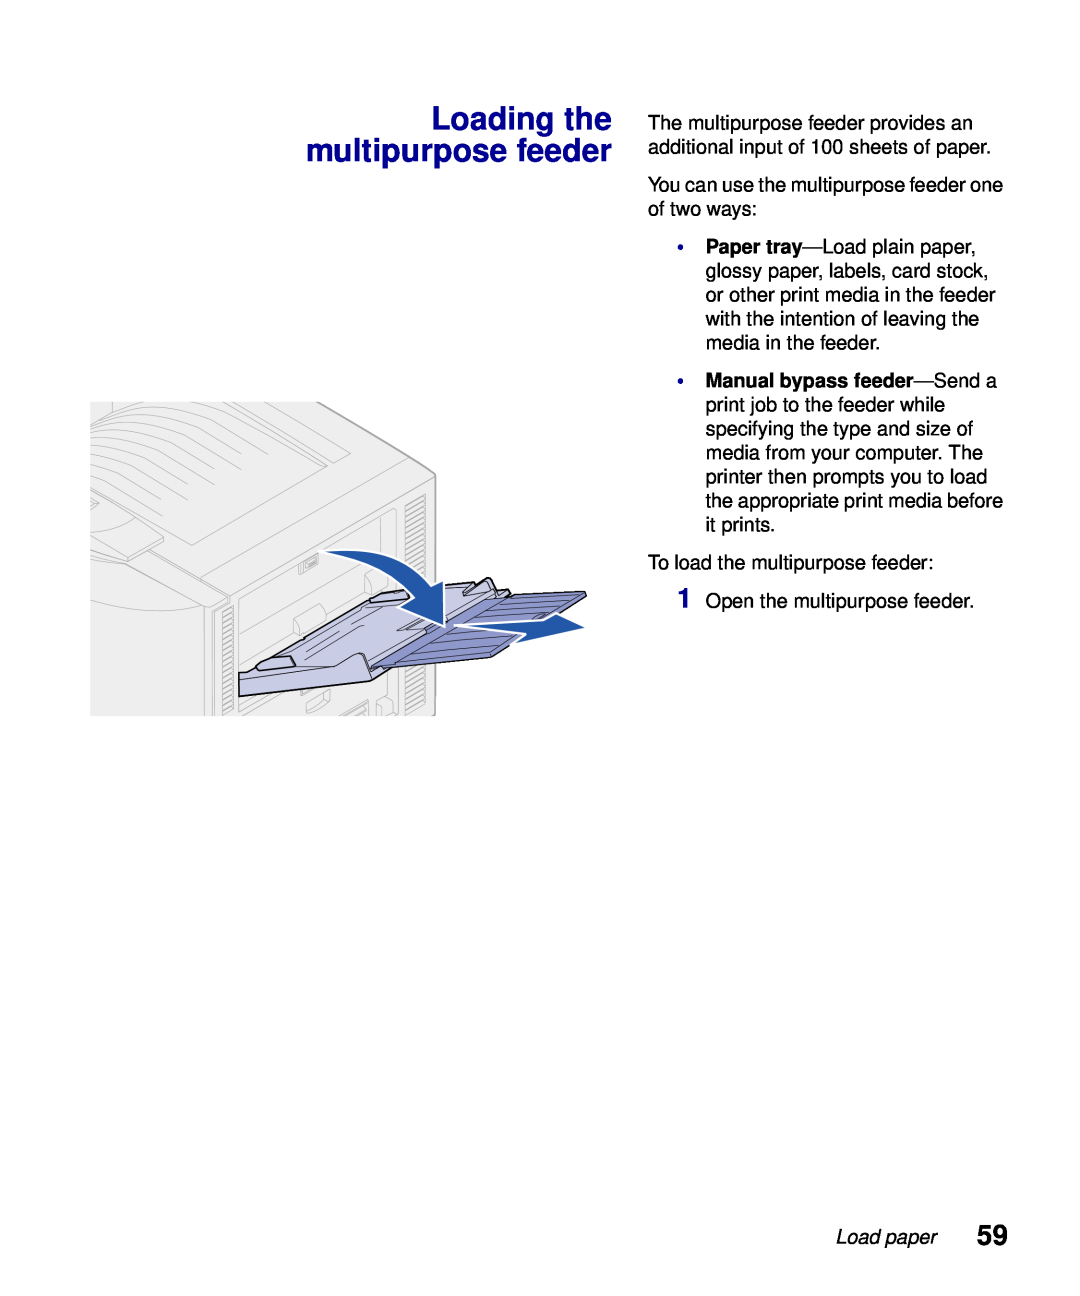 Lexmark S510-2222-00 setup guide Loading the multipurpose feeder, Load paper 